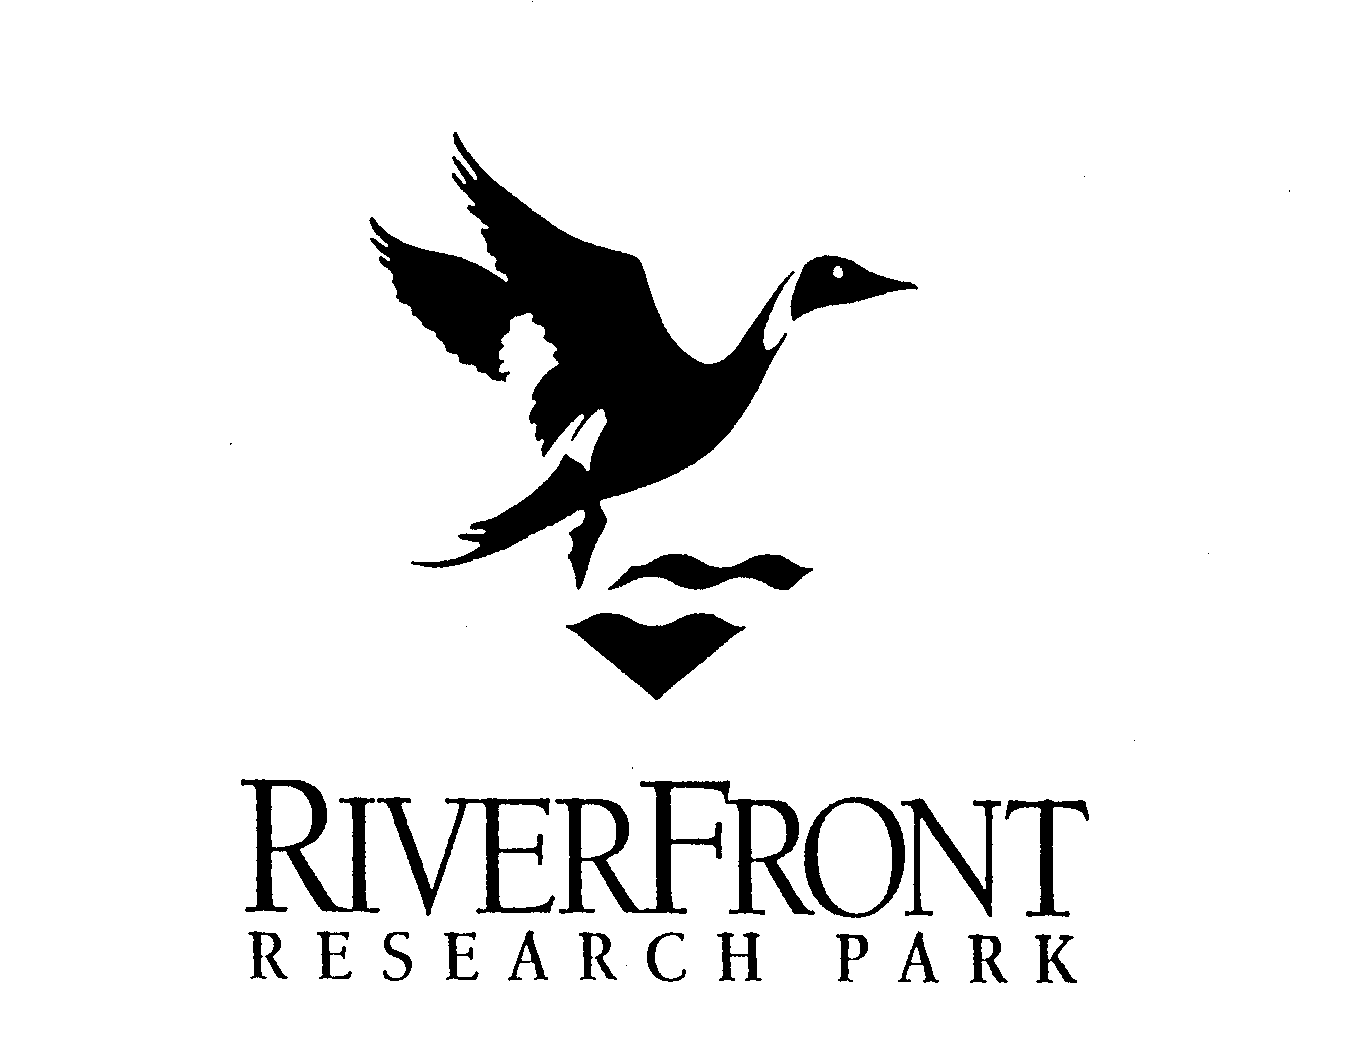  RIVERFRONT RESEARCH PARK